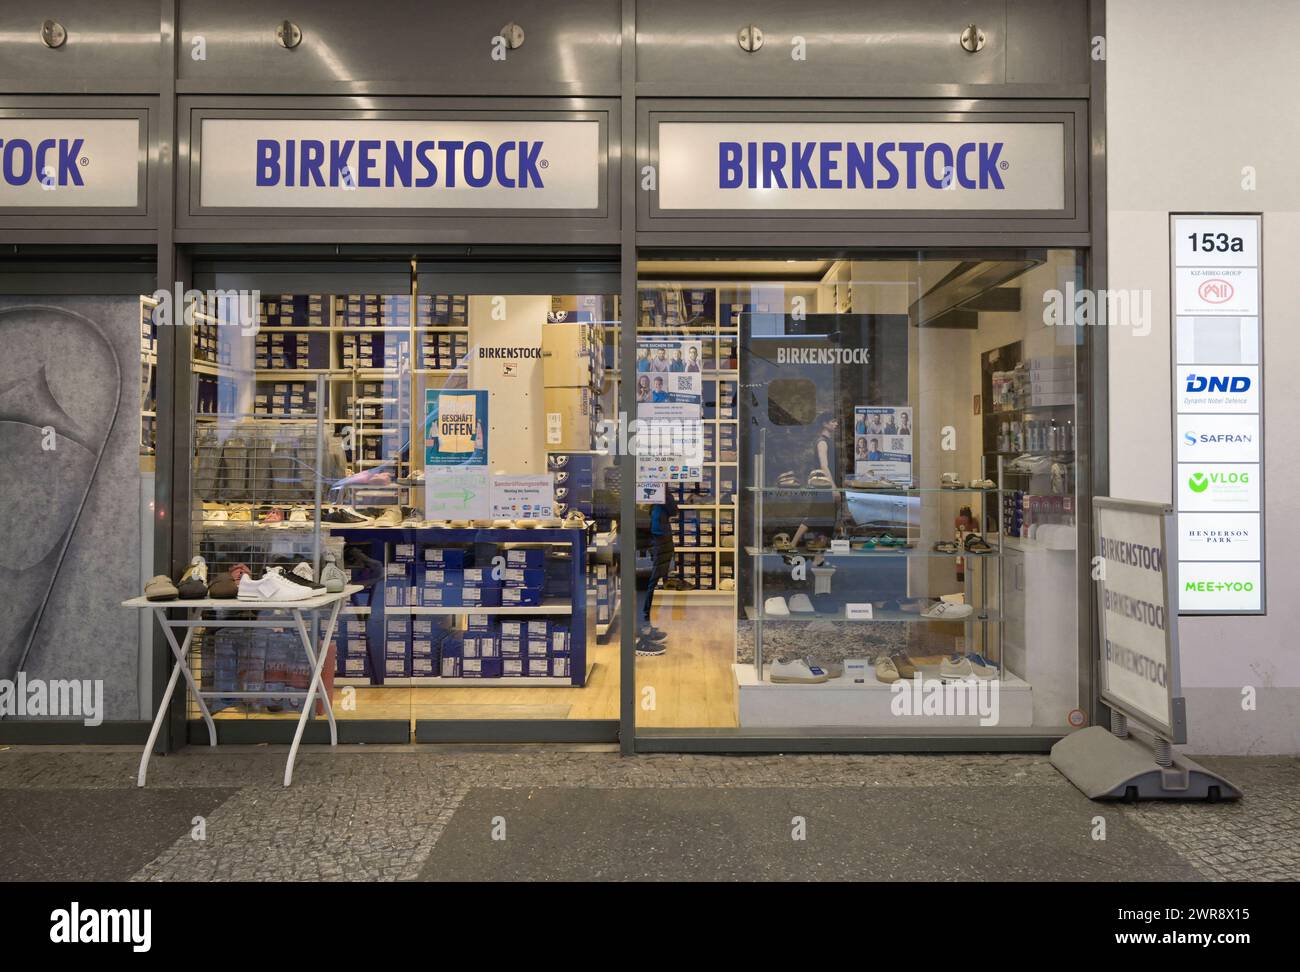 Birkenstock Schuhe, Geschäft, Friedrichstraße, Mitte, Berlin, Deutschland *** Birkenstock Shoes, Shop, Friedrichstraße, Mitte, Berlin, Germany Stock Photo